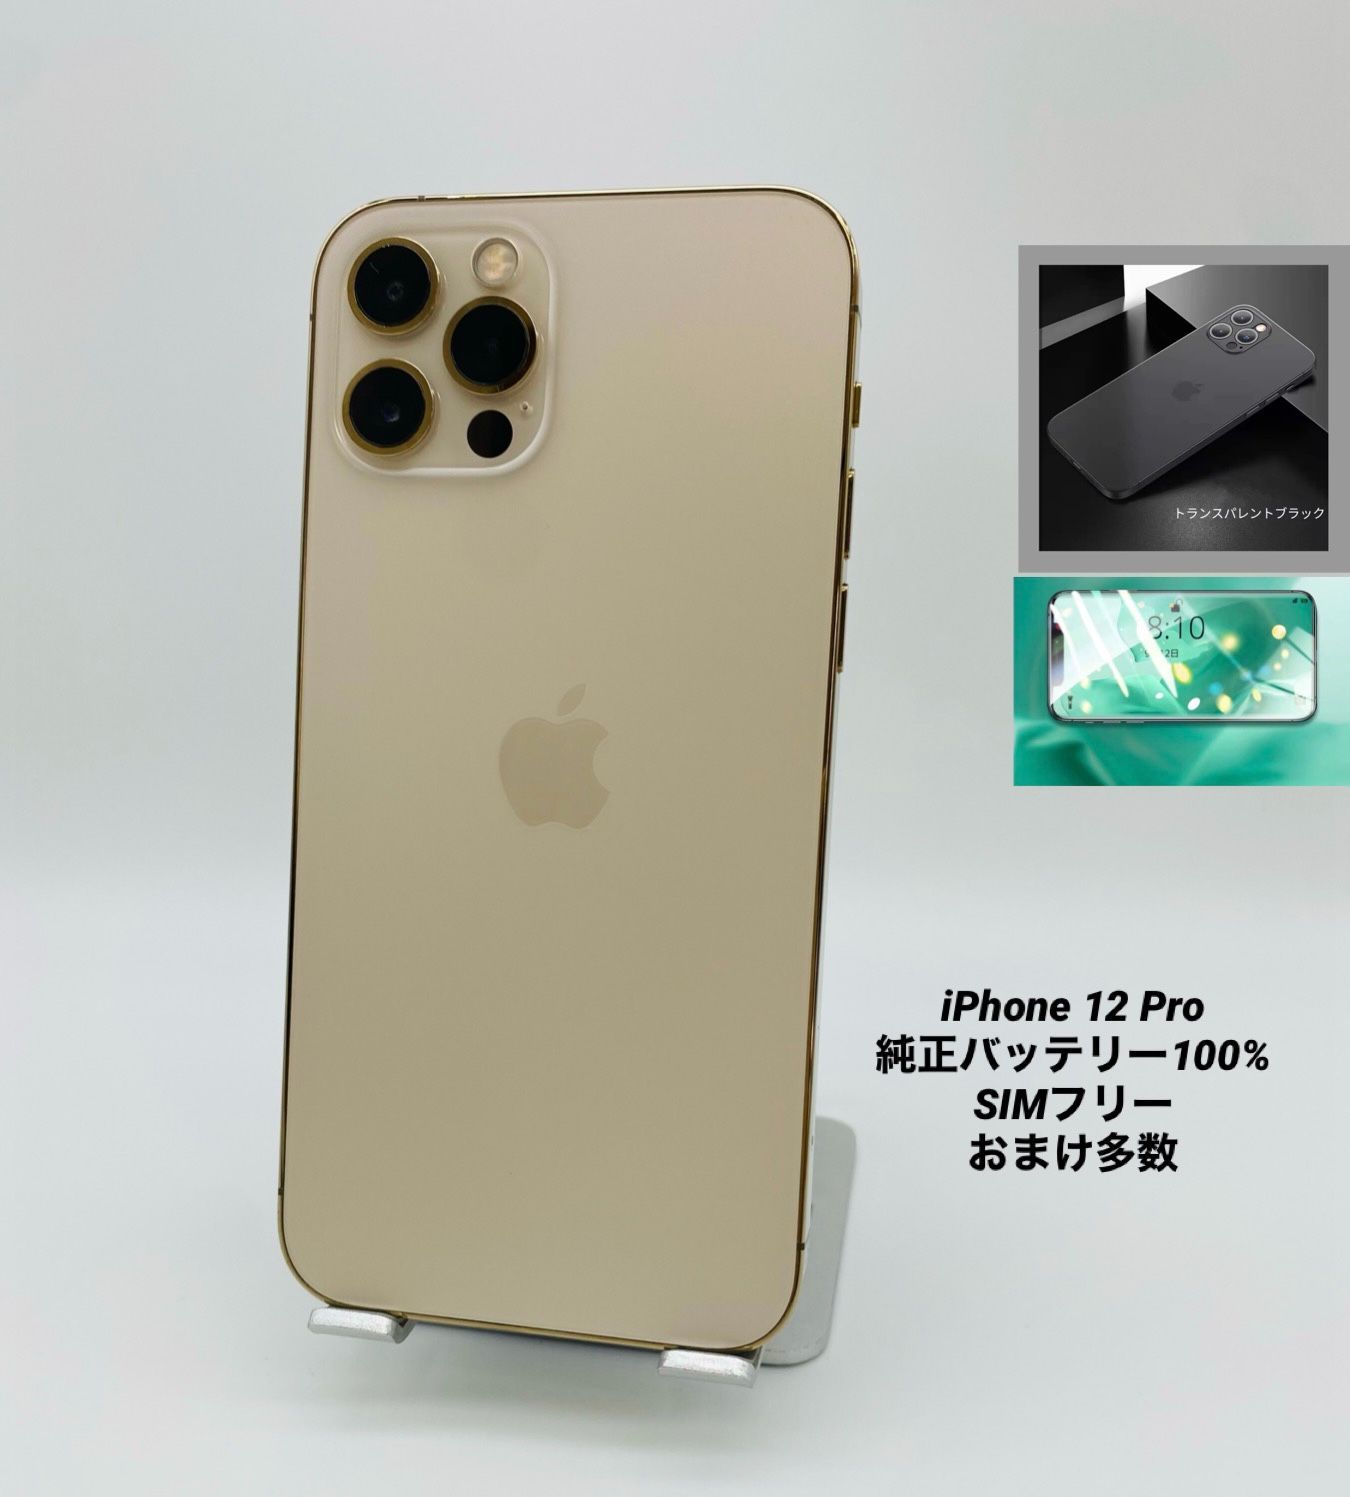 iPhone12 Pro 128GB ゴールド/シムフリー/純正バッテリー100%/極薄